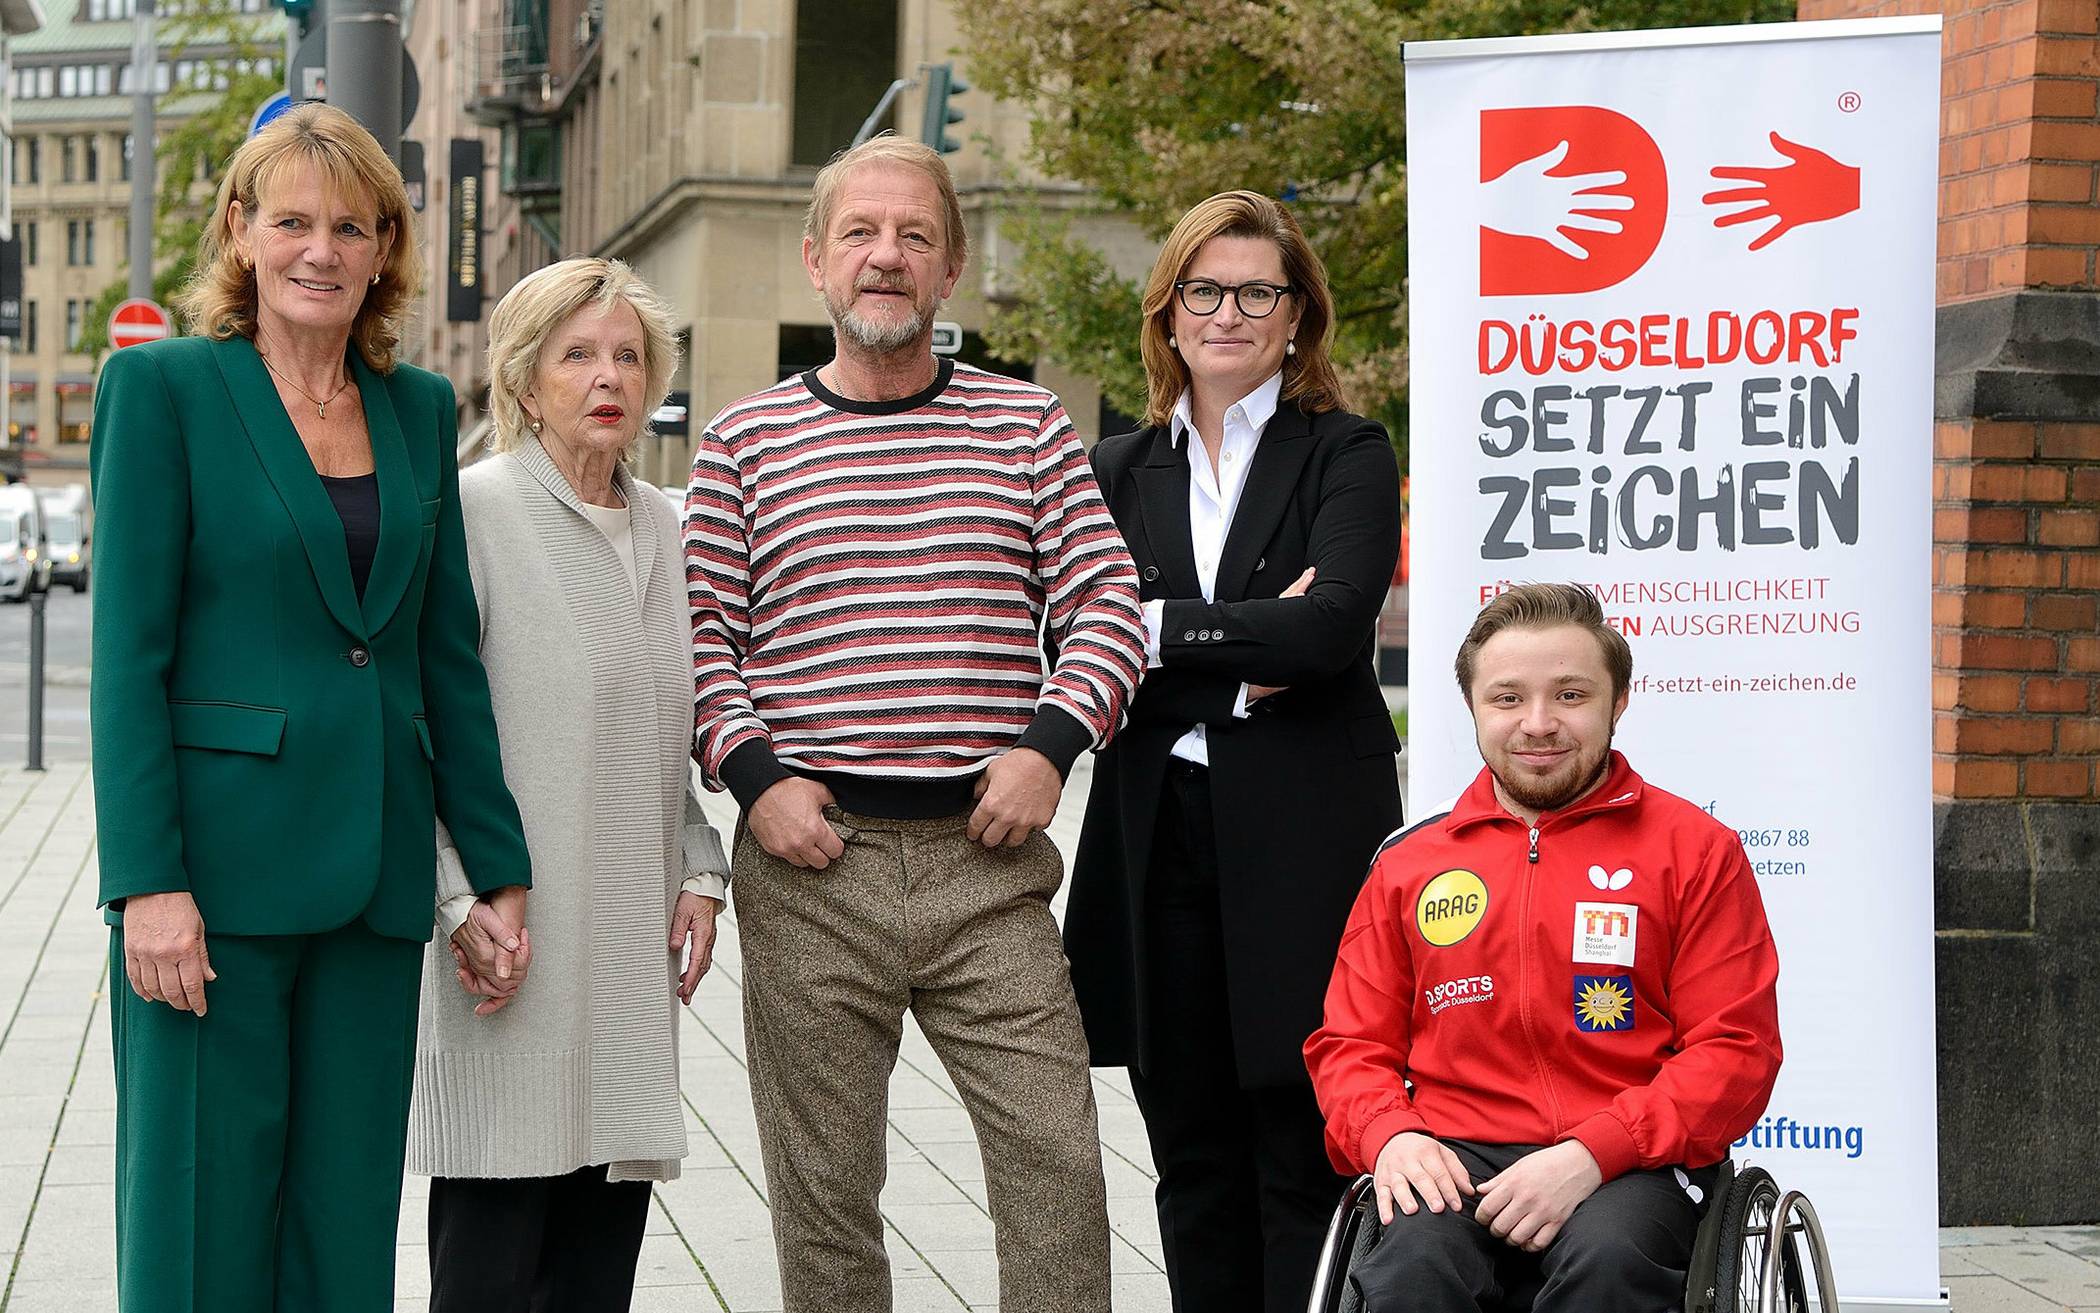 Bürgerstiftungs-Vorsitzende Sabine Tüllmann mit den BotschafterInnen Heike Vongehr, Sönke Wortmann, Dr. Charlotte Beissel und Valentin Baus (v. l.).